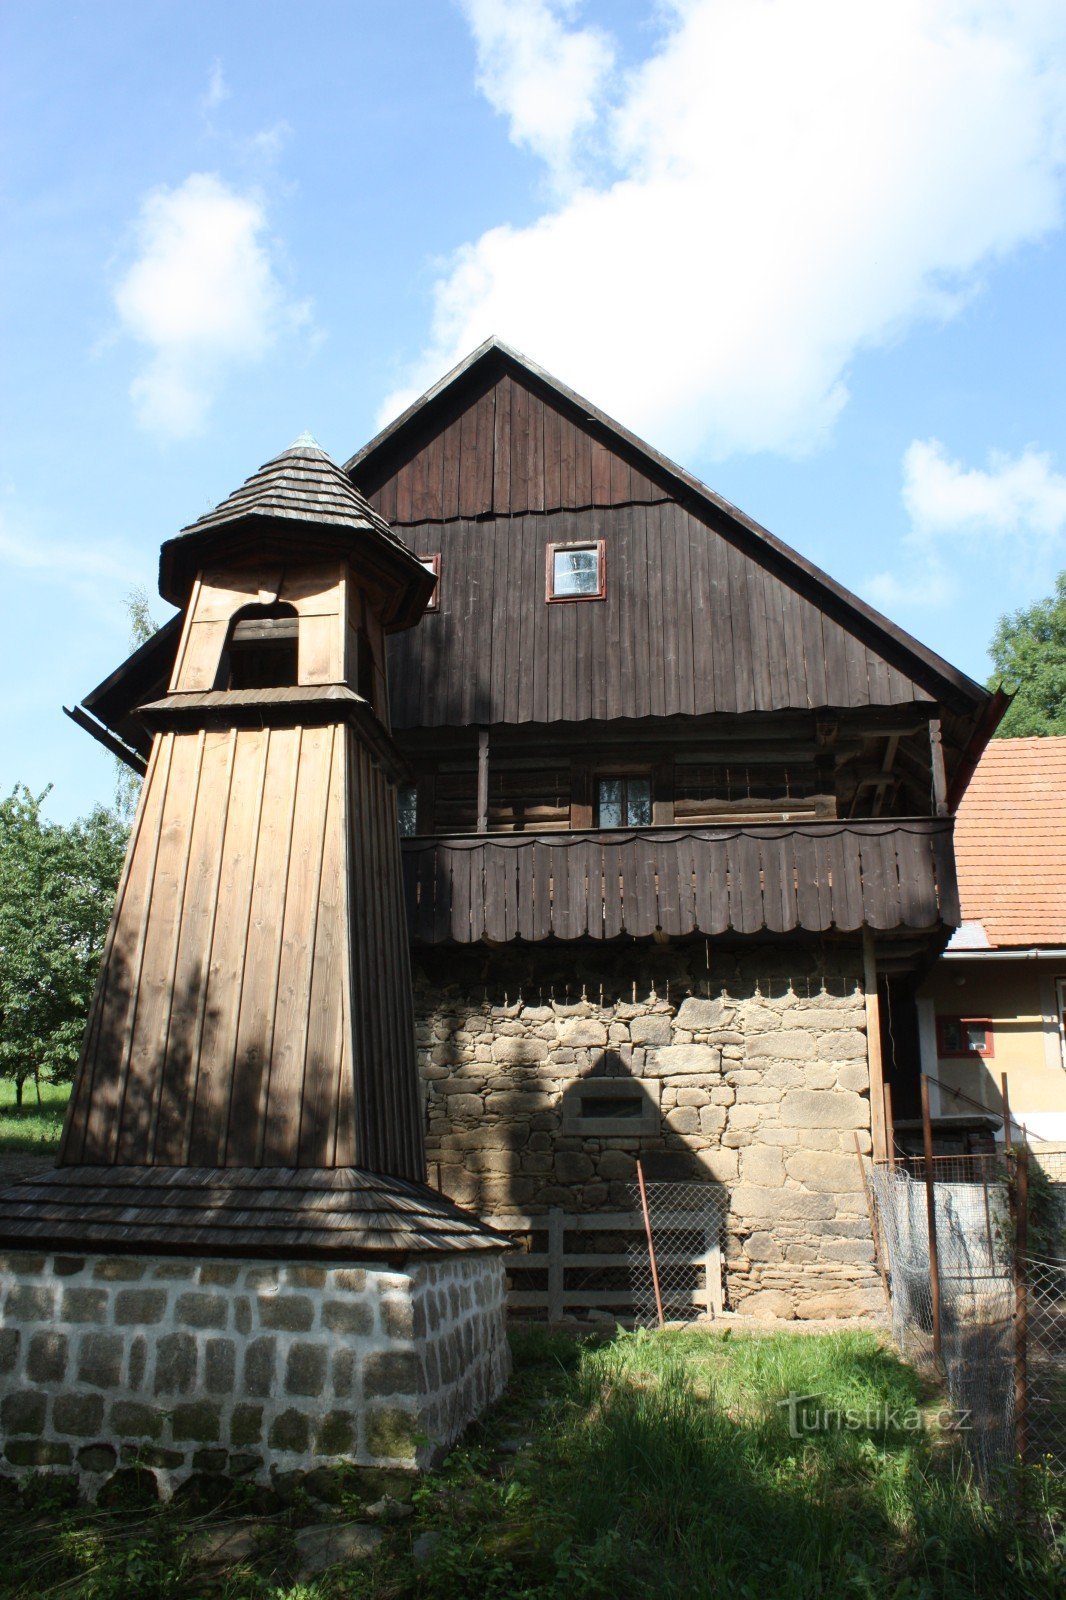 Wooden belfry in Škodějov in the Semila region